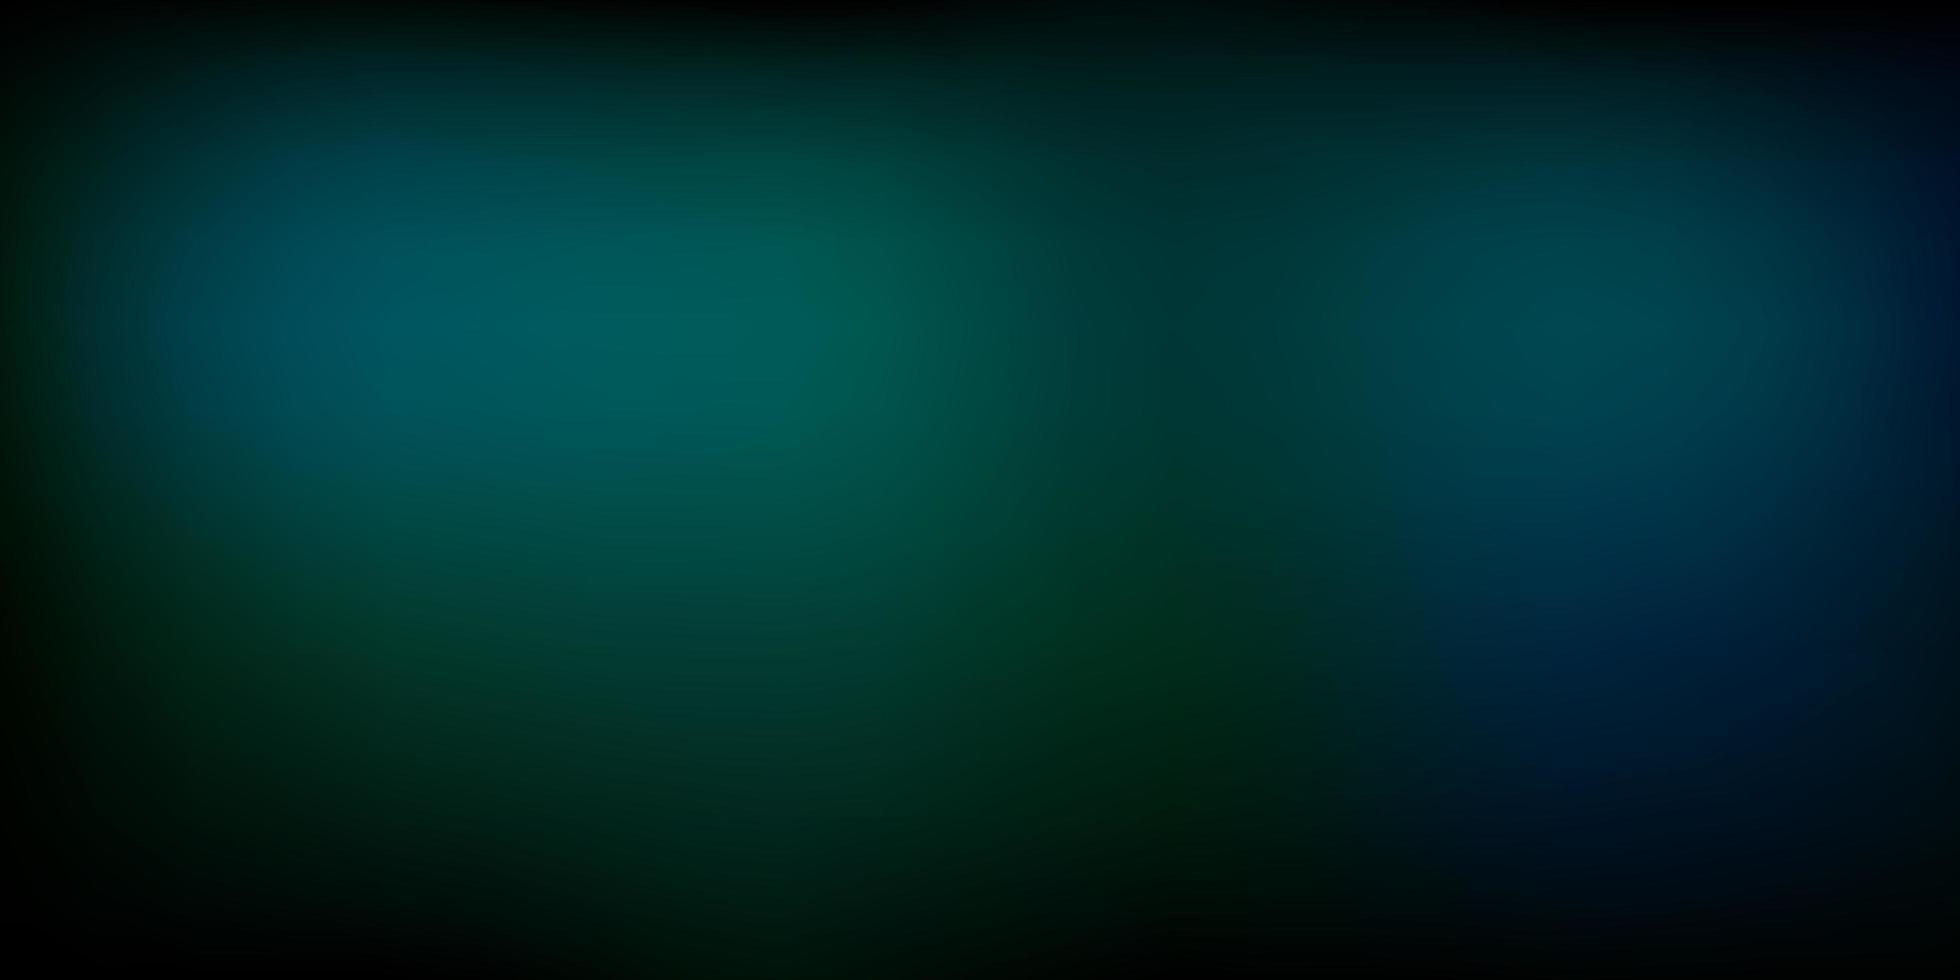 mörkgrön vektor abstrakt oskärpa bakgrund.